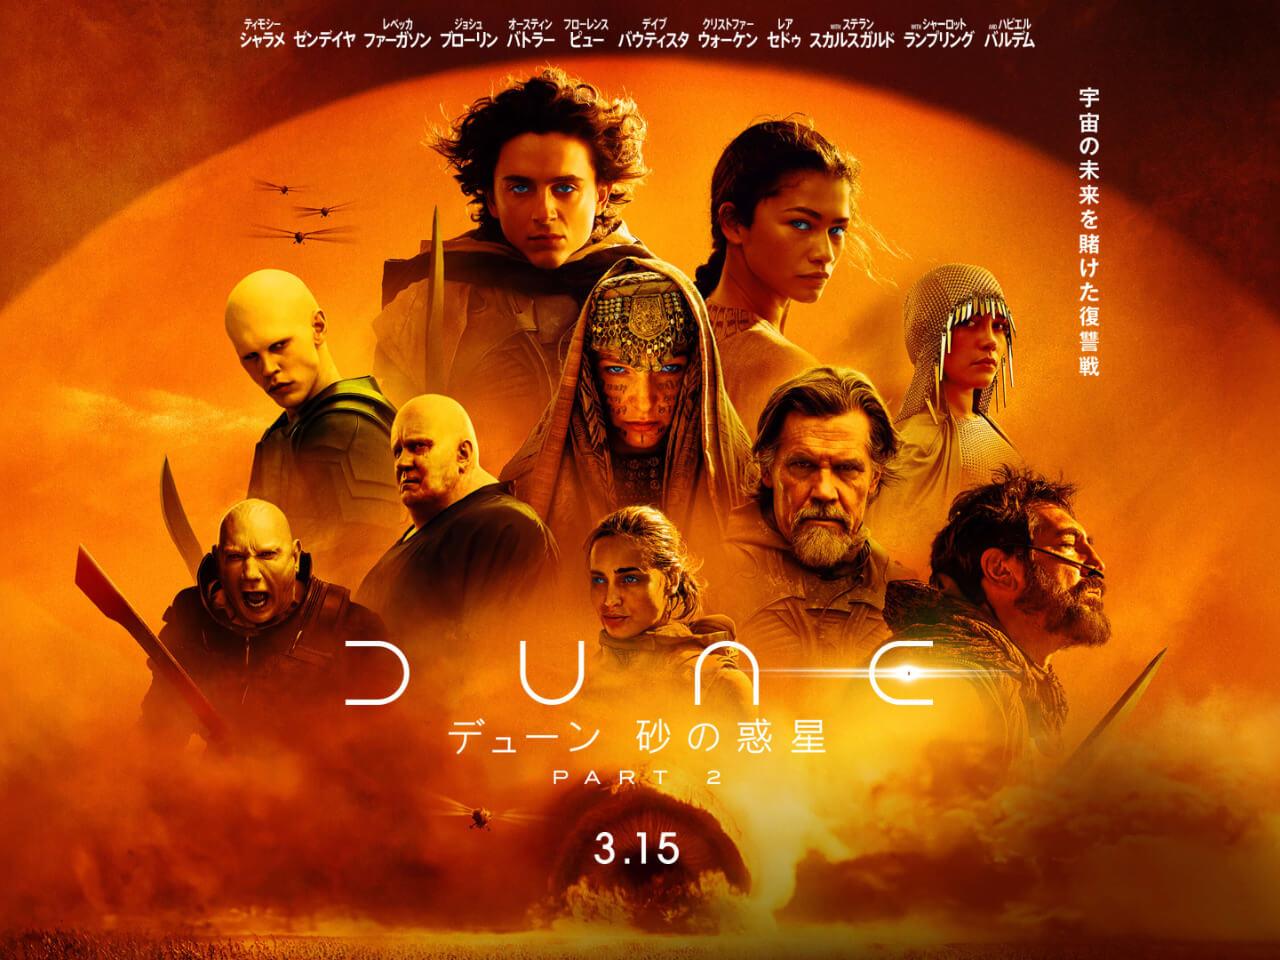 映画『デューン 砂の惑星PART2』は3月15日に日本公開